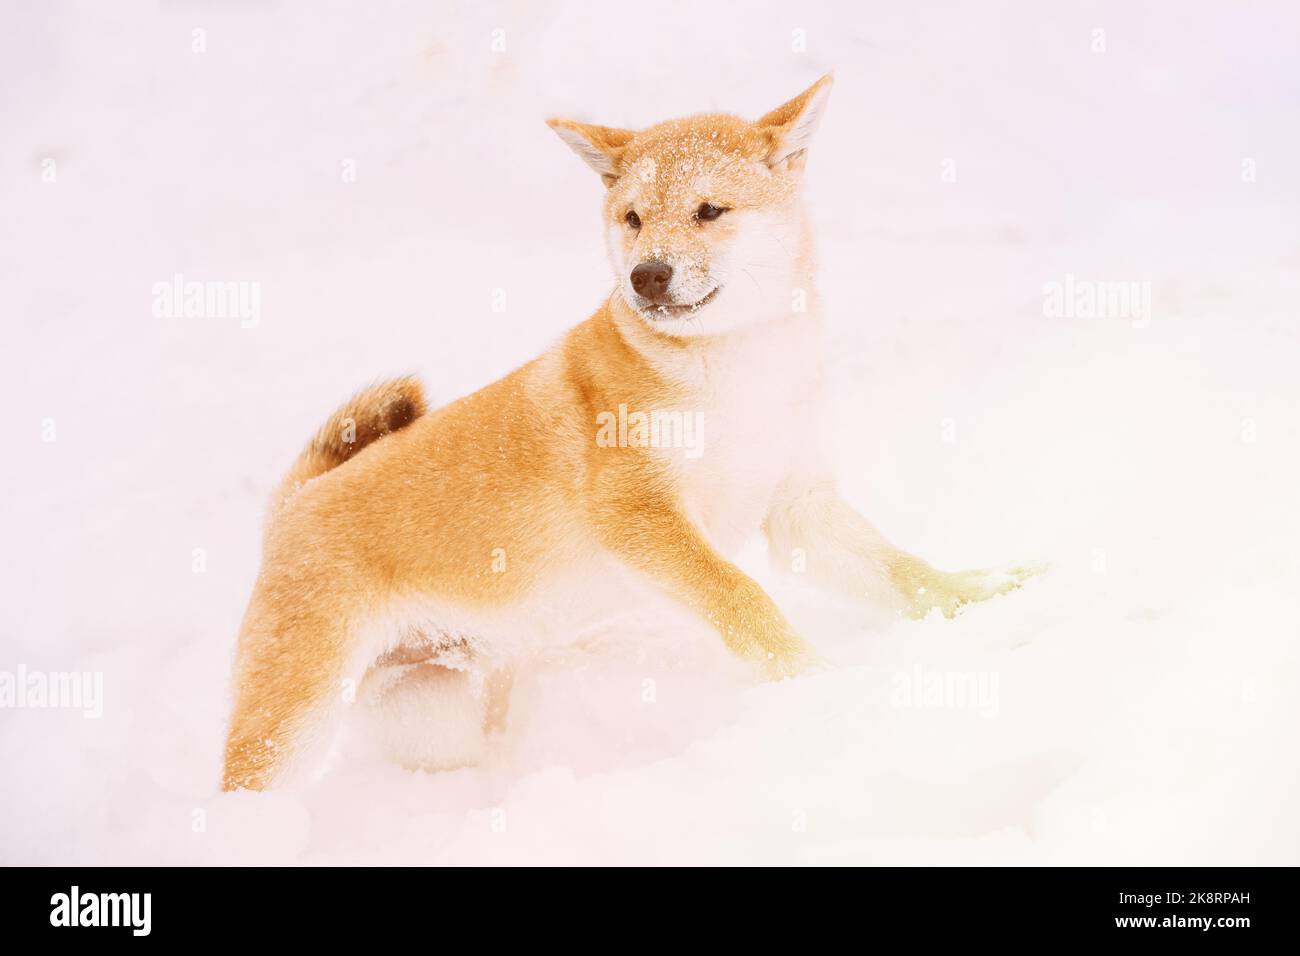 Hund Mit Schnee Bestreut. Shiba Inu Spielerisch Durch Schneeverwehungen. Neugierige Junge Japanische Kleine Größe Shiba Inu Hund Spielen Im Freien Im Schnee, Schneeverwehung An Stockfoto